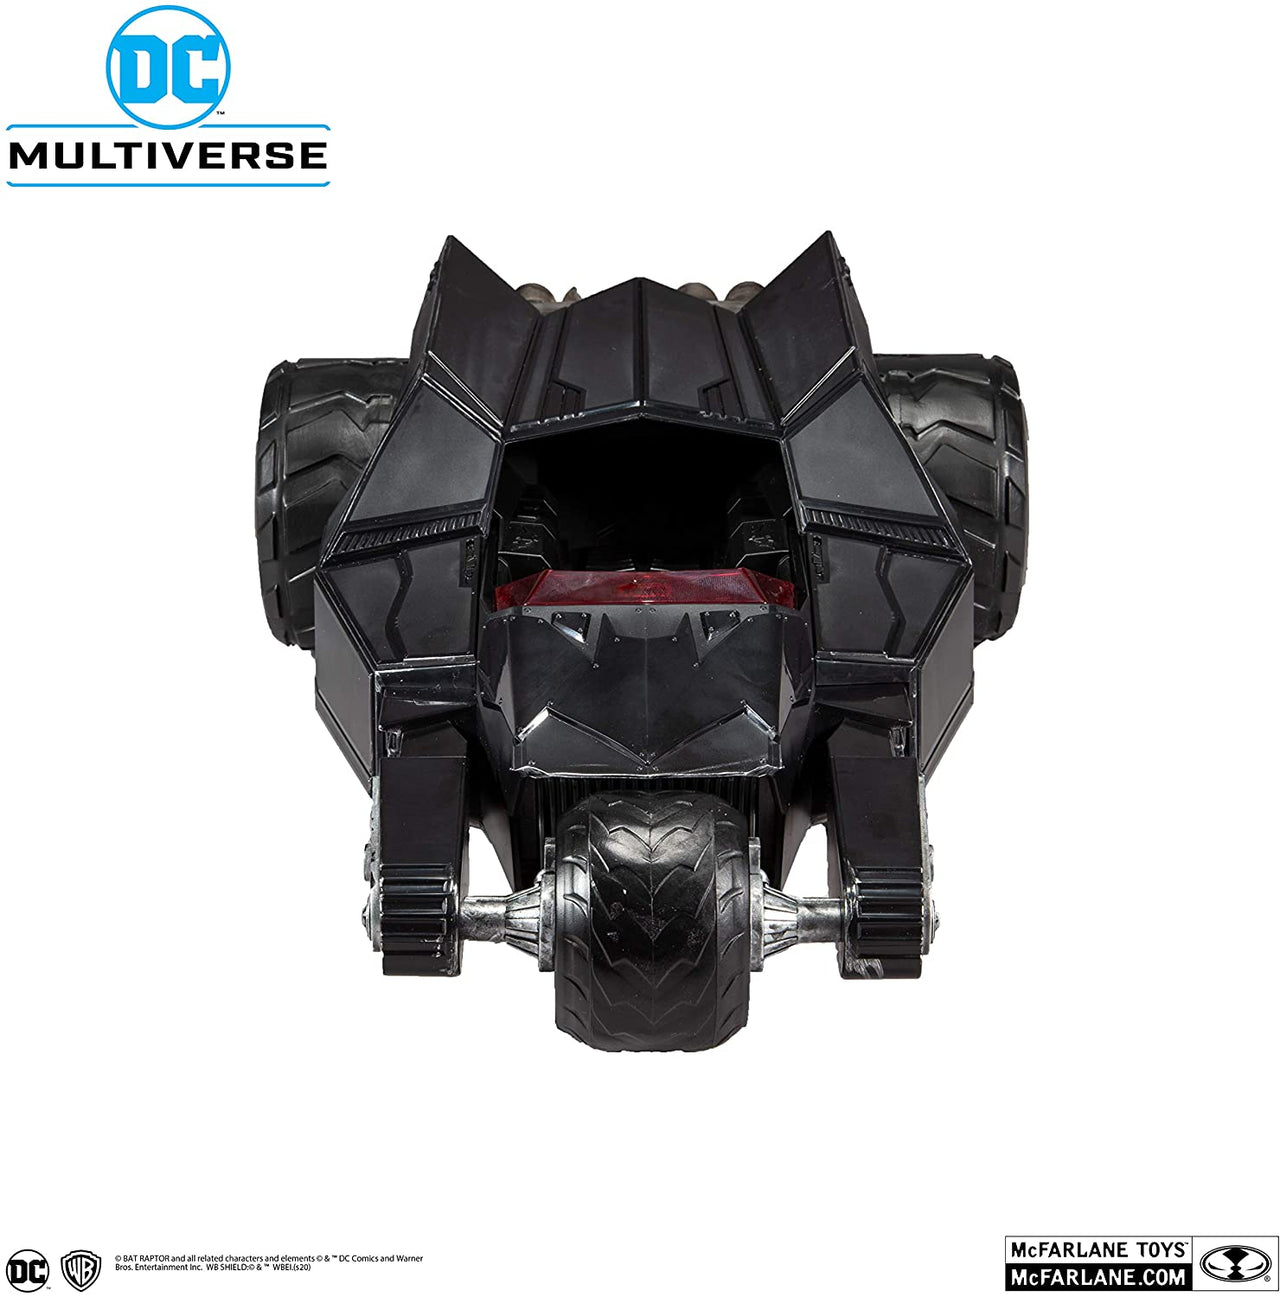 McFarlane Toys DC Multiverse Bat-Raptor Vehicle